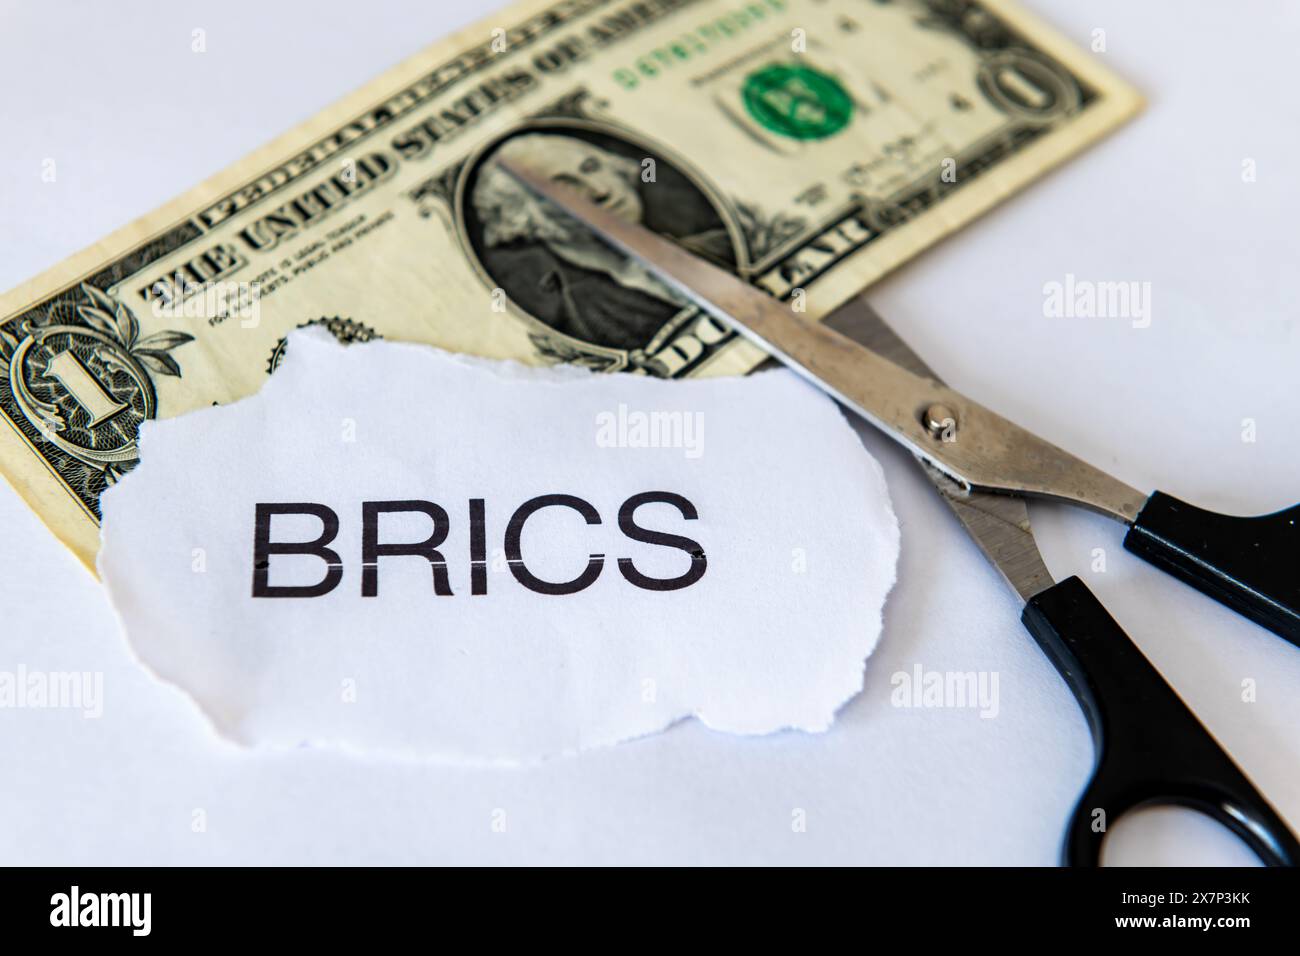 Ein Dollarisierungskonzept mit einer Dollarnote, dem Wort BRICS und einer weißen Schere. Stockfoto